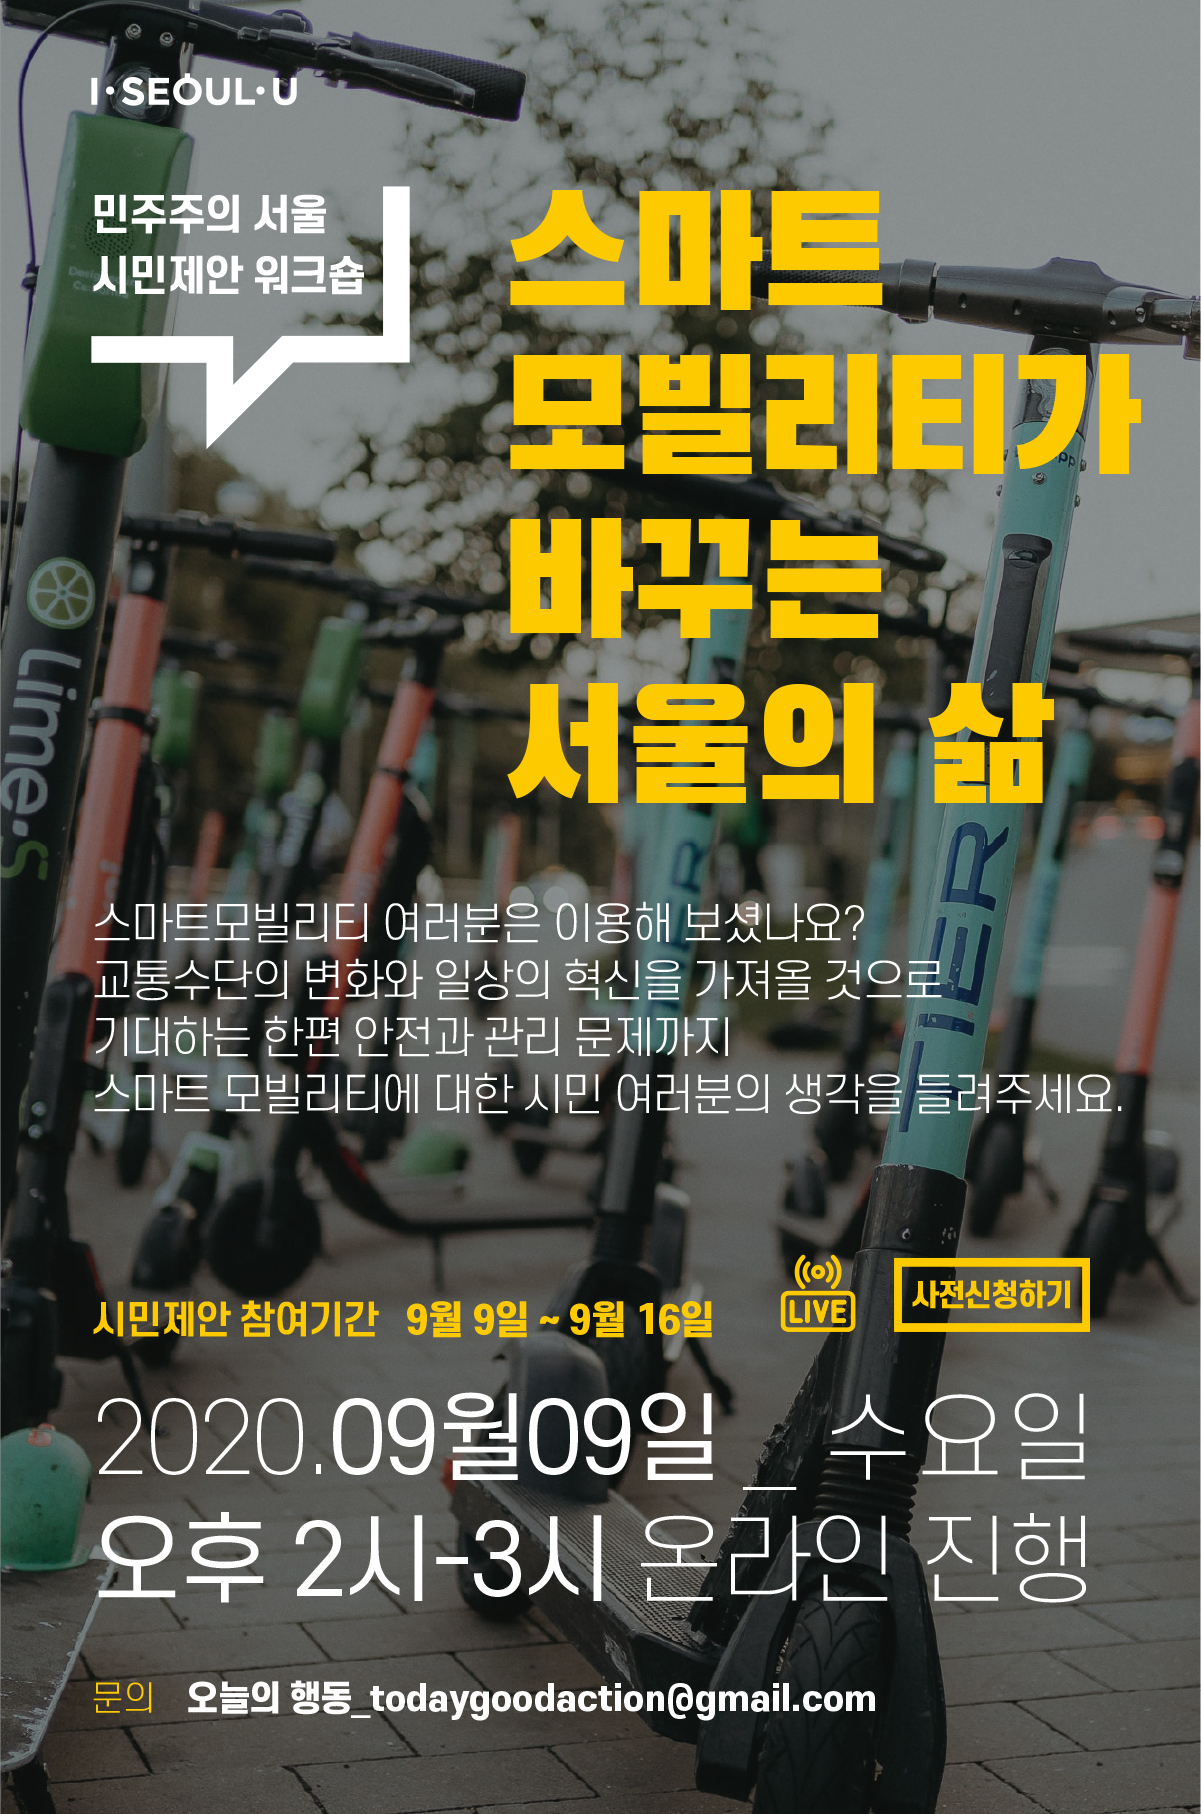 스마트모빌리티가 바꾸는 서울의 삶 , 여러분은 이용해 보셨나요? 교통수단의 변화와 일상의 혁신을 가져올 것으로 기대하는 한편 안전과 관리문제가자ㅣ 스마트 모빌리티에 대한 시민 여러분의 생각을 들려주세요 , 시민제안 참여기간 9월 9일~9월16일 , 2020.09월09일 수요일 오후 2시~3시 온라인 진행, 문의 오늘의행동_todaygoodaction@gmail.com